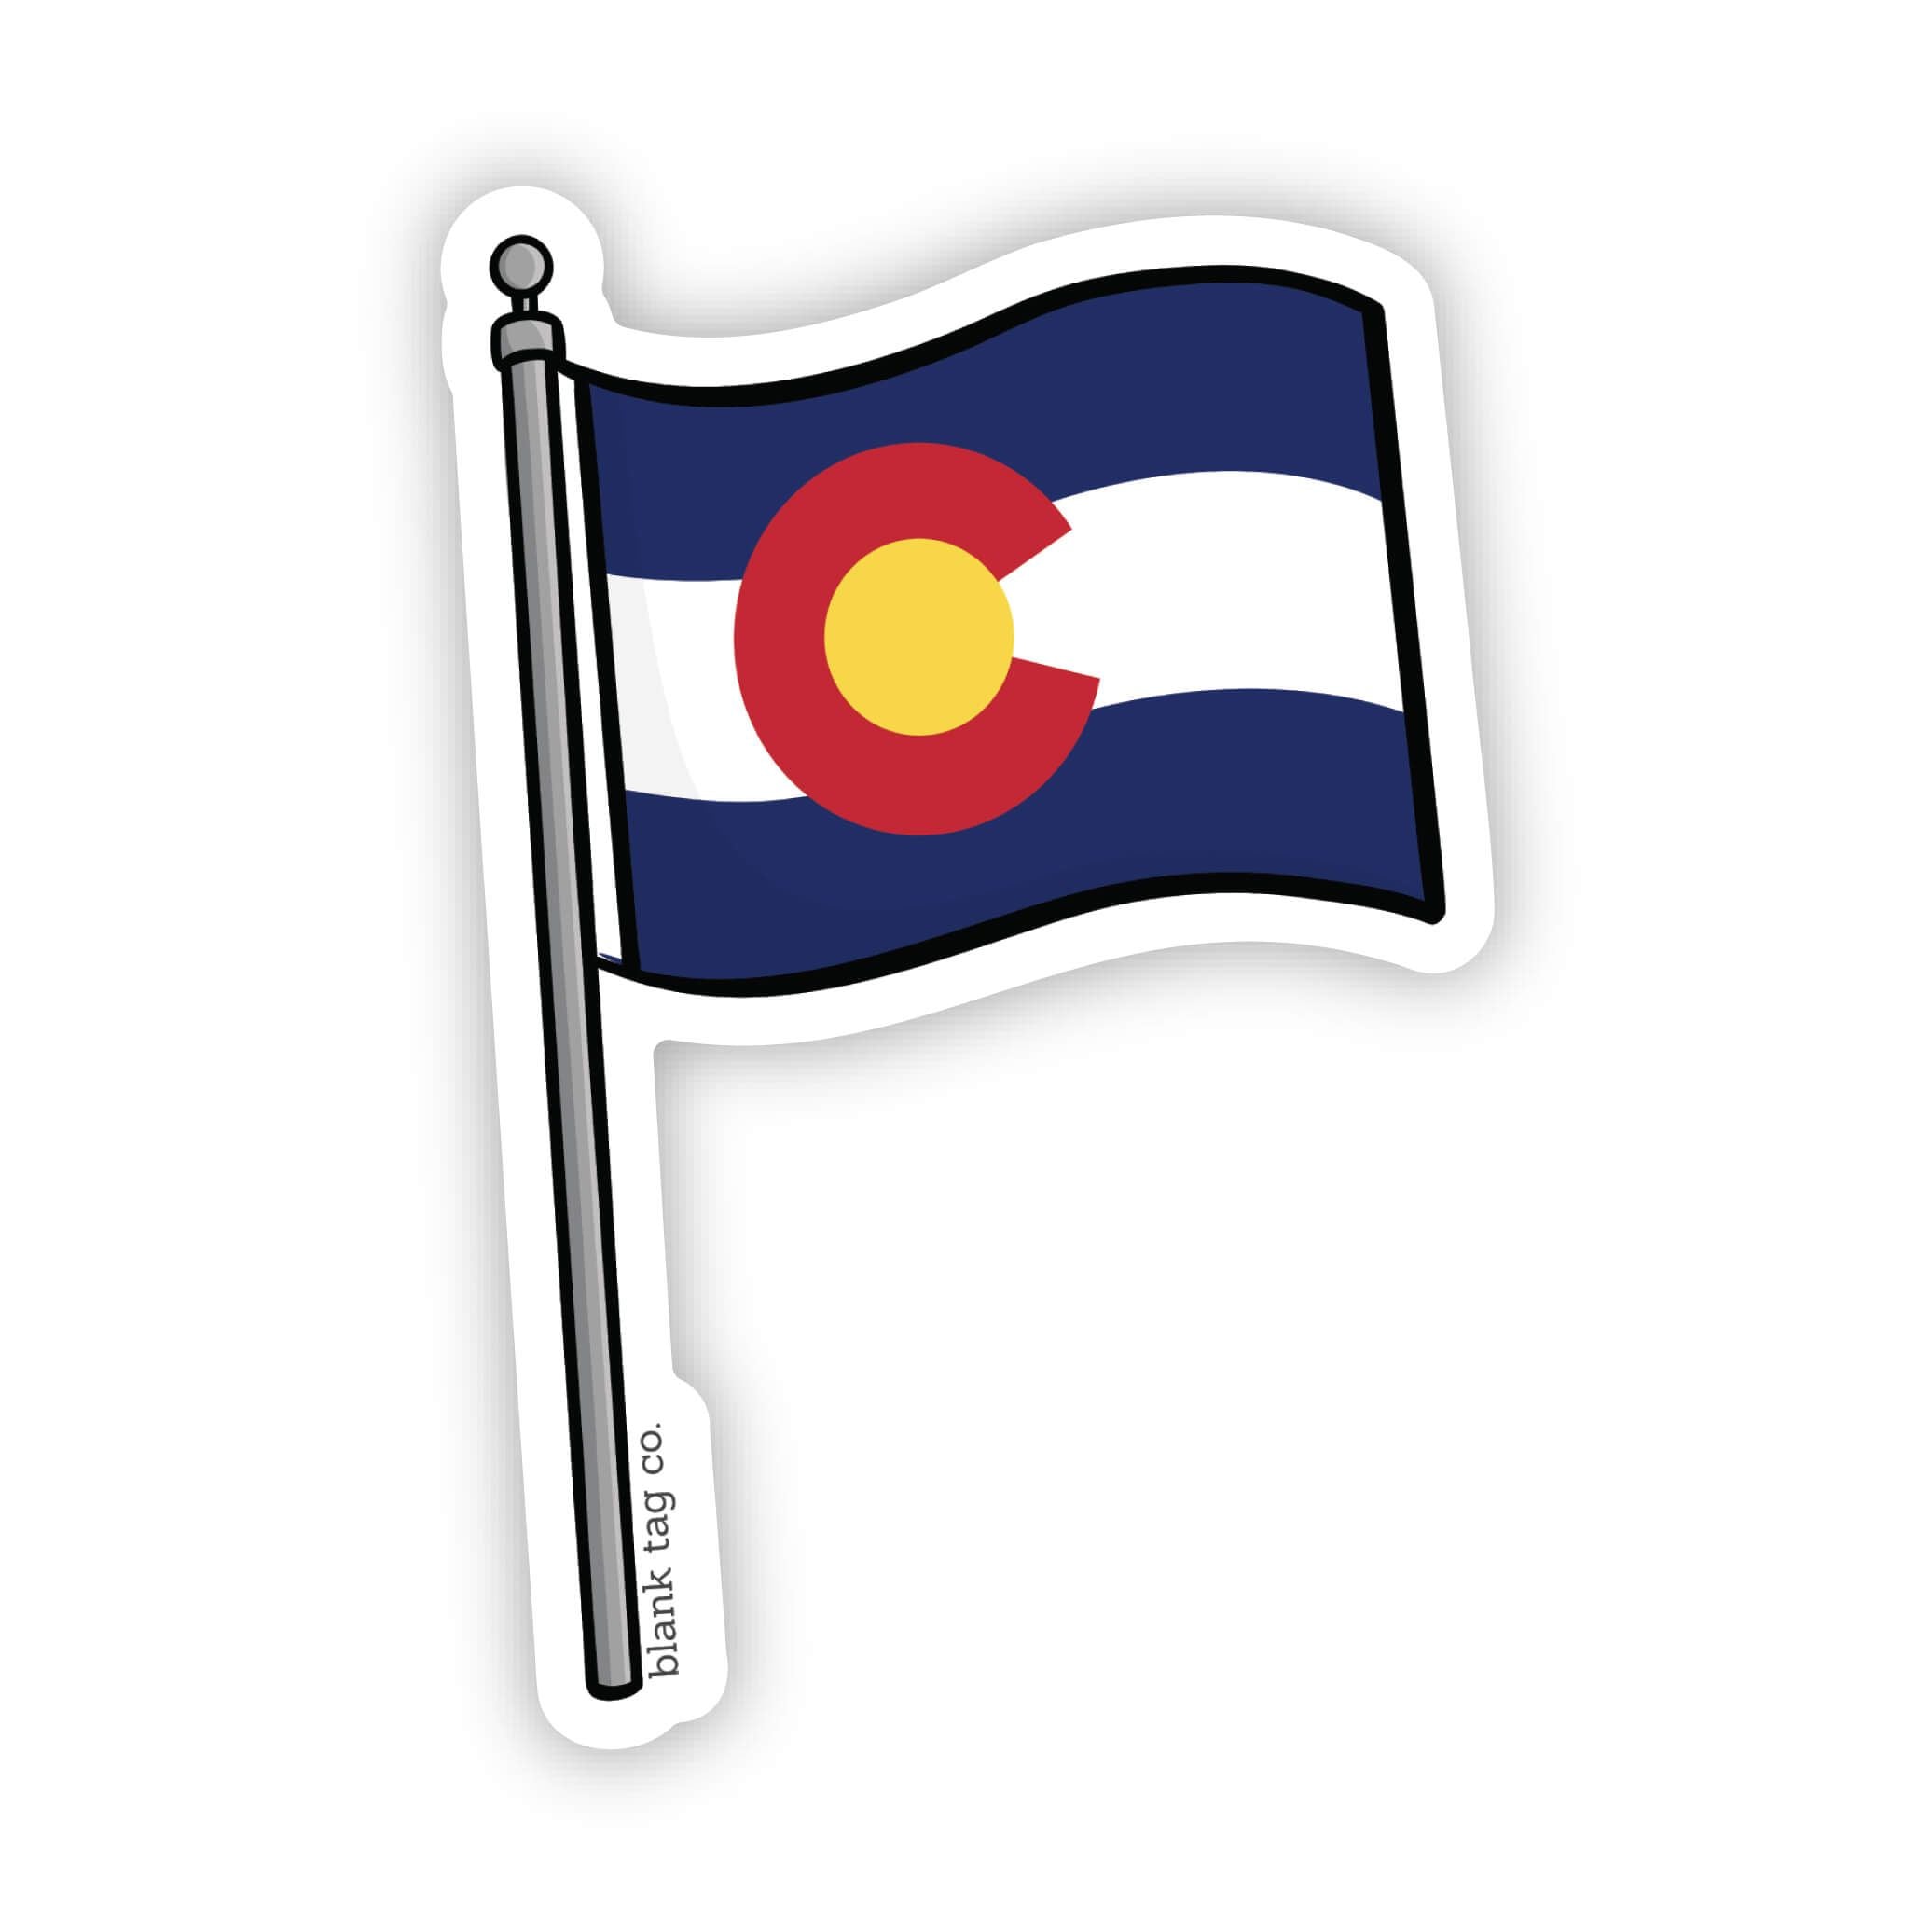 The Colorado Flag Sticker